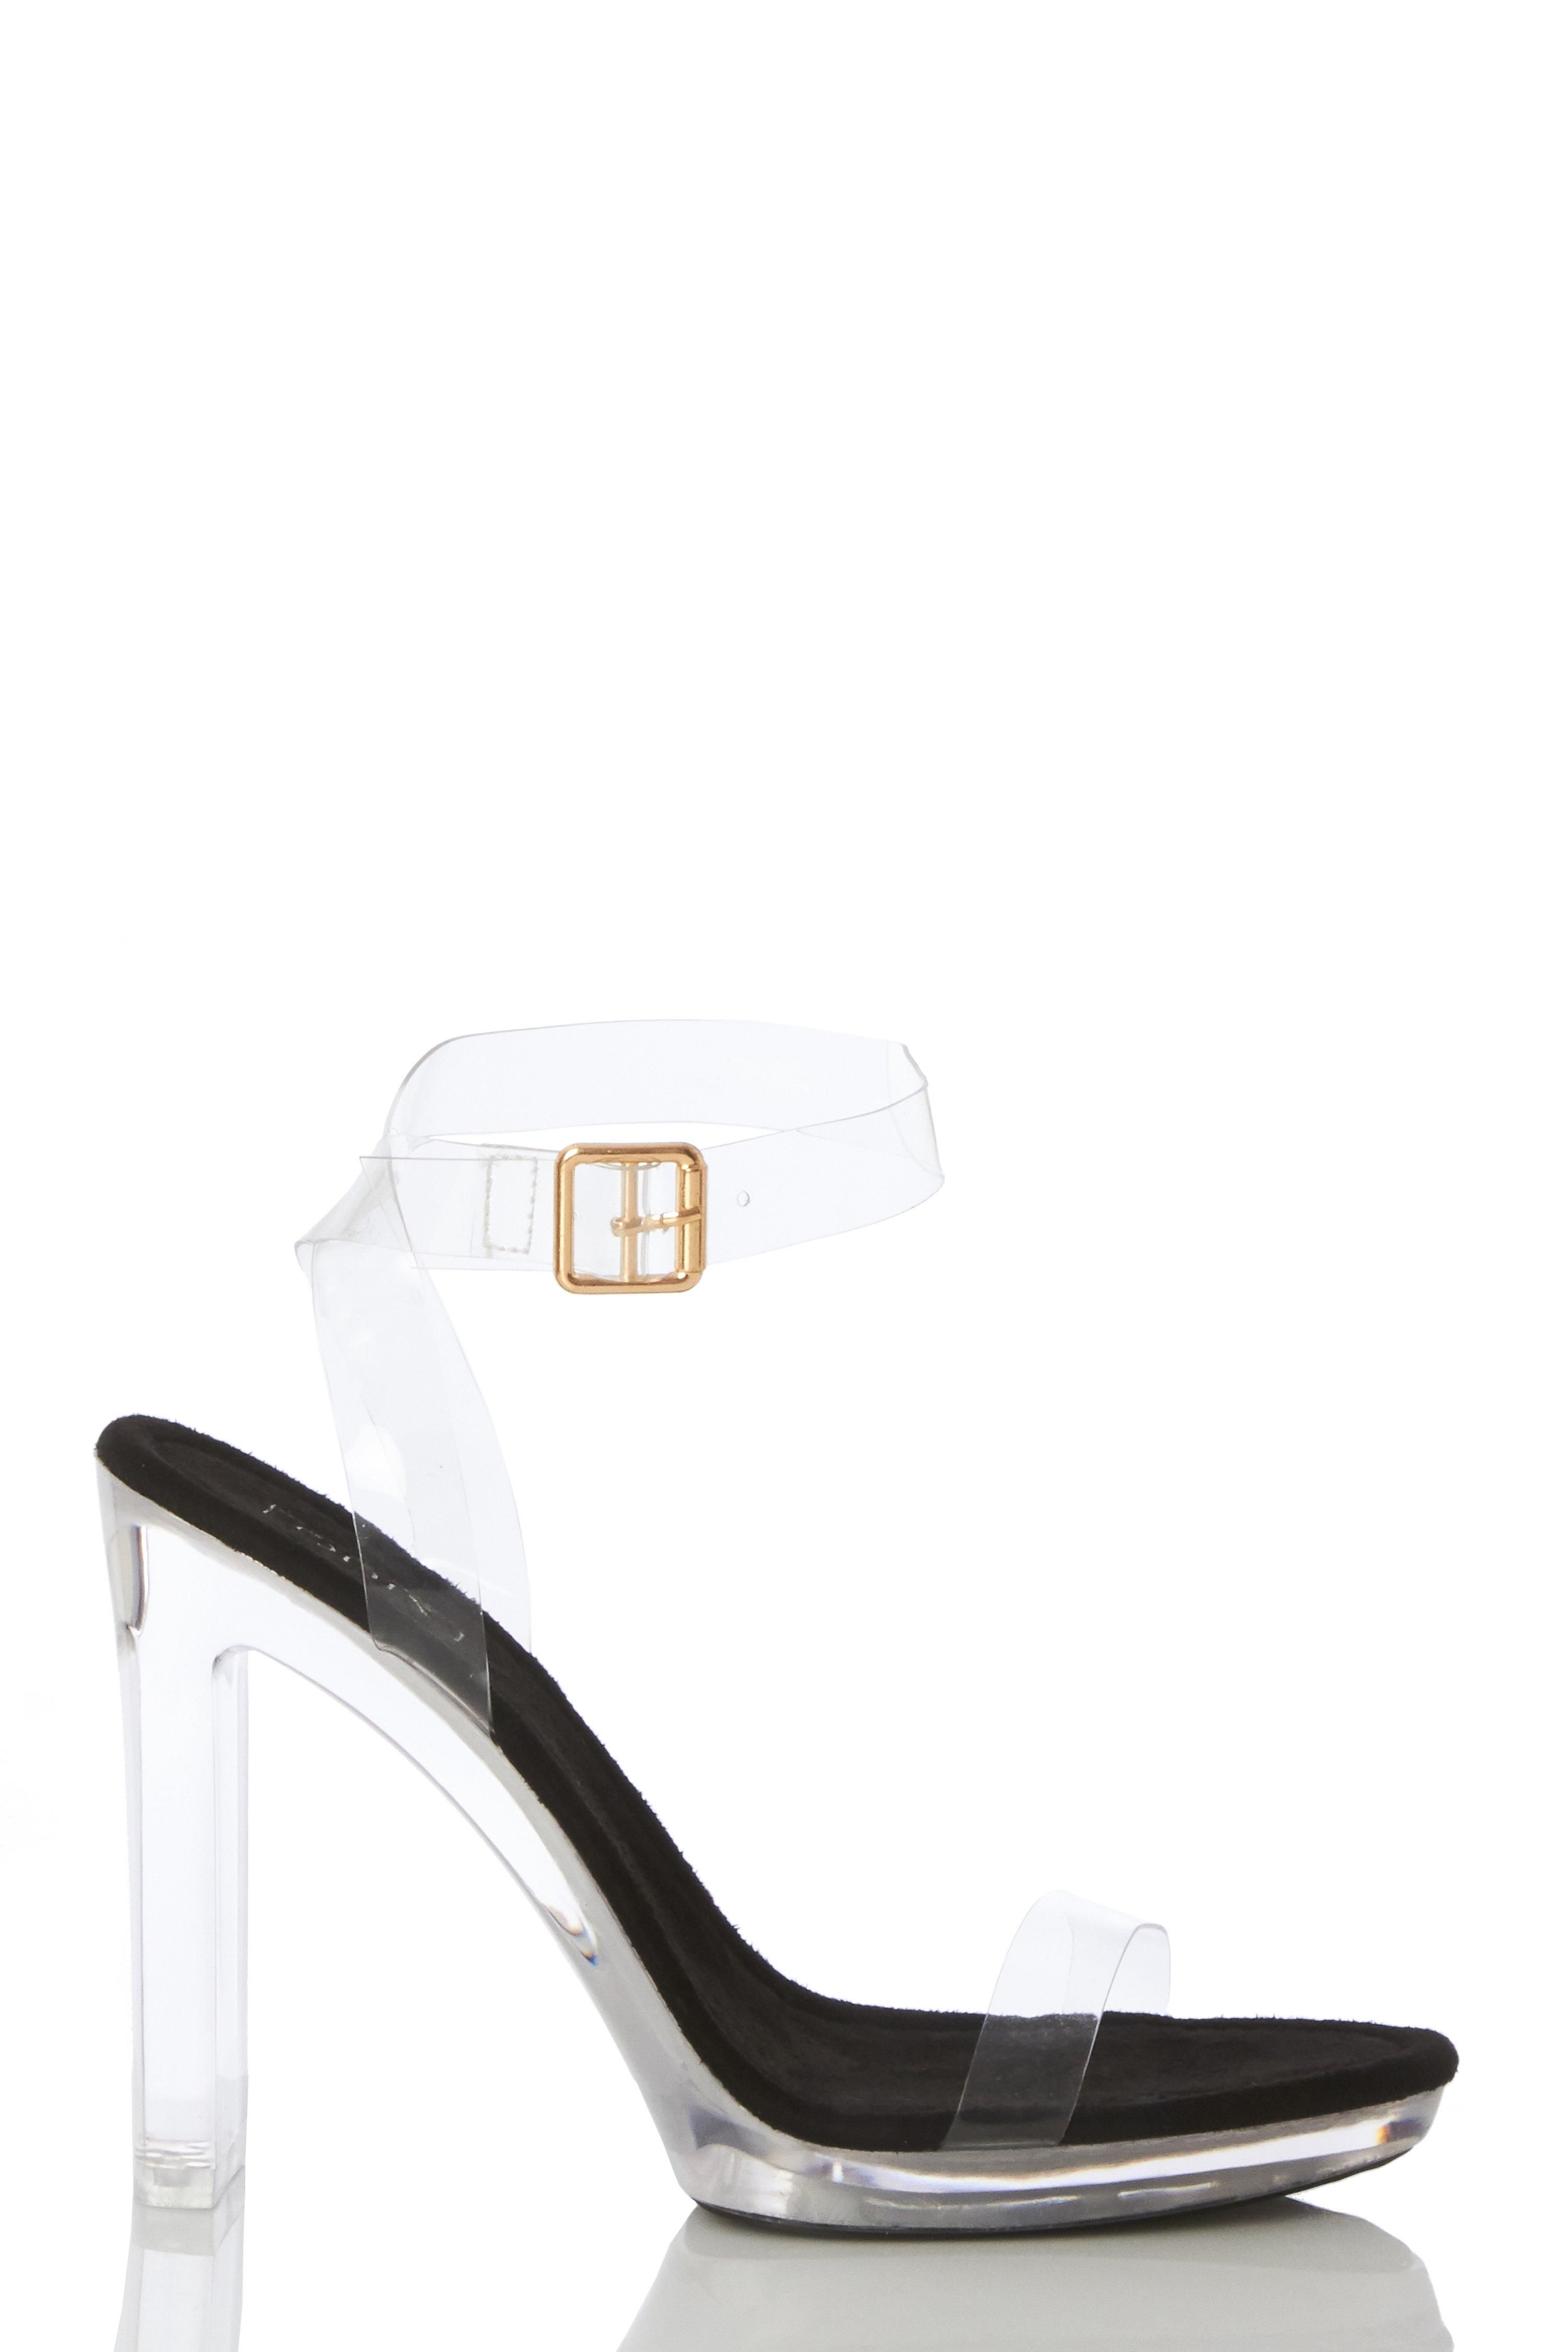 - Clear straps  - Buckle fasten  - Clear block heel  - Sandal style   - Heel height: 4.5